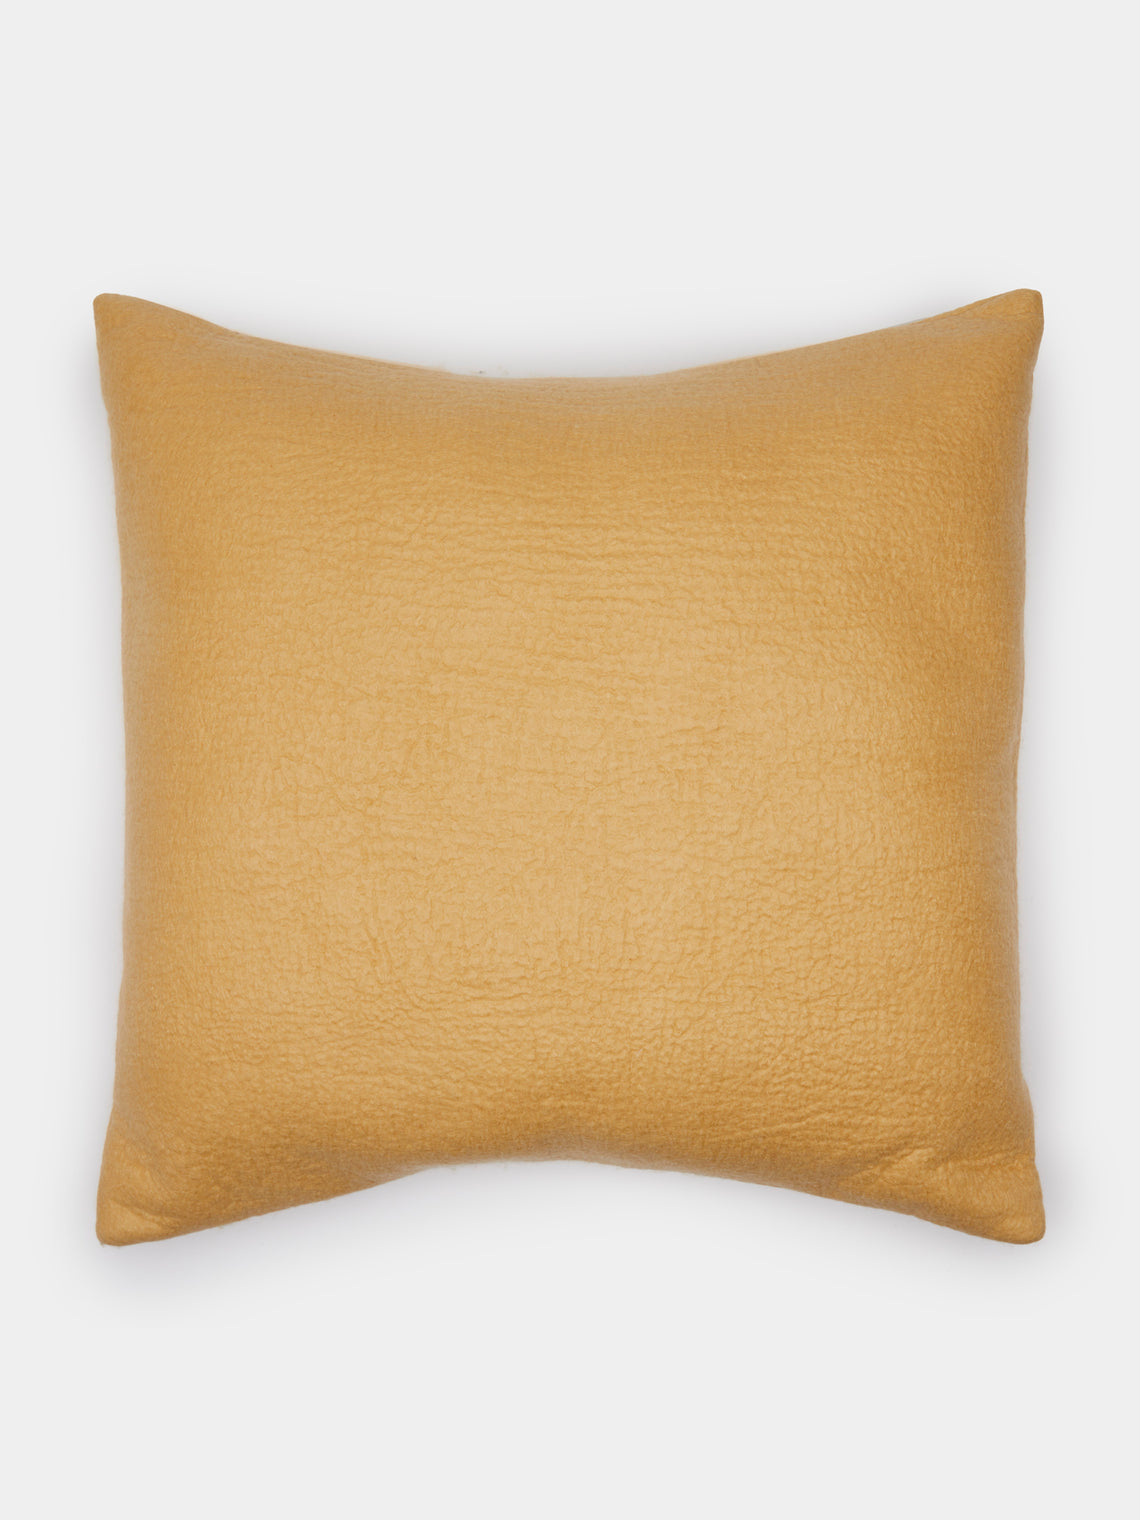 Rose Uniacke - Large Felted Cashmere Cushion - Gold - ABASK - 